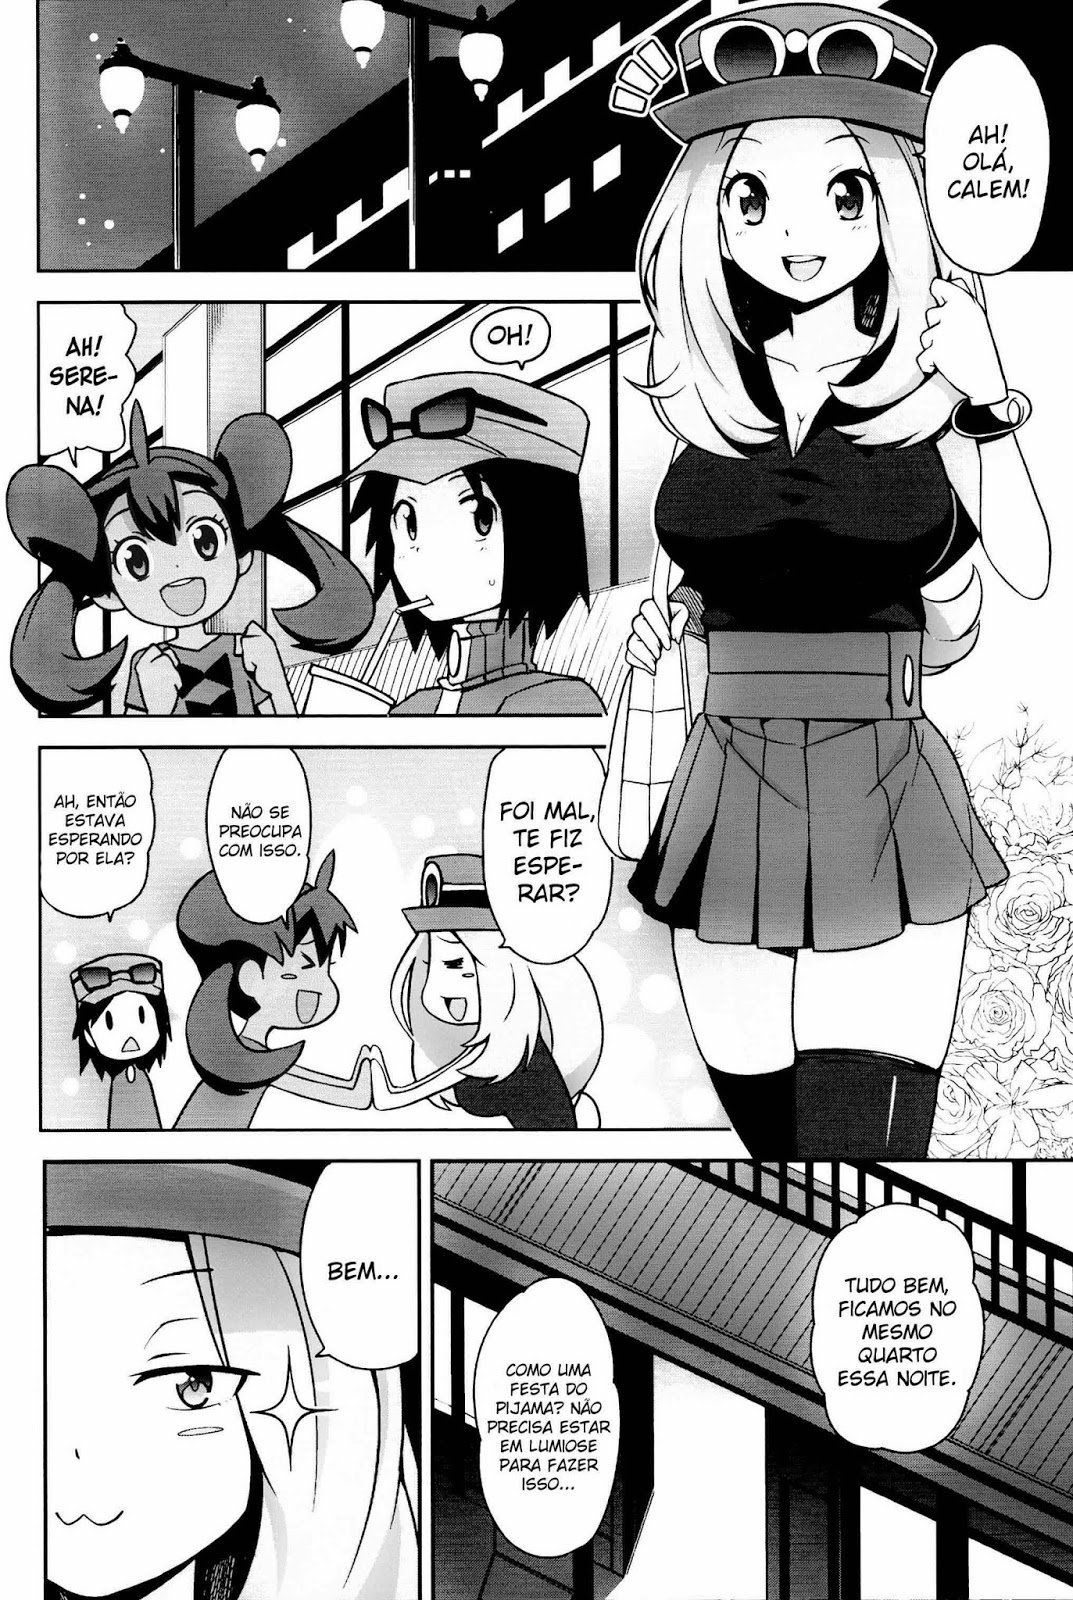 Pokémon Hentai - Calem e Shauna fazendo sexo